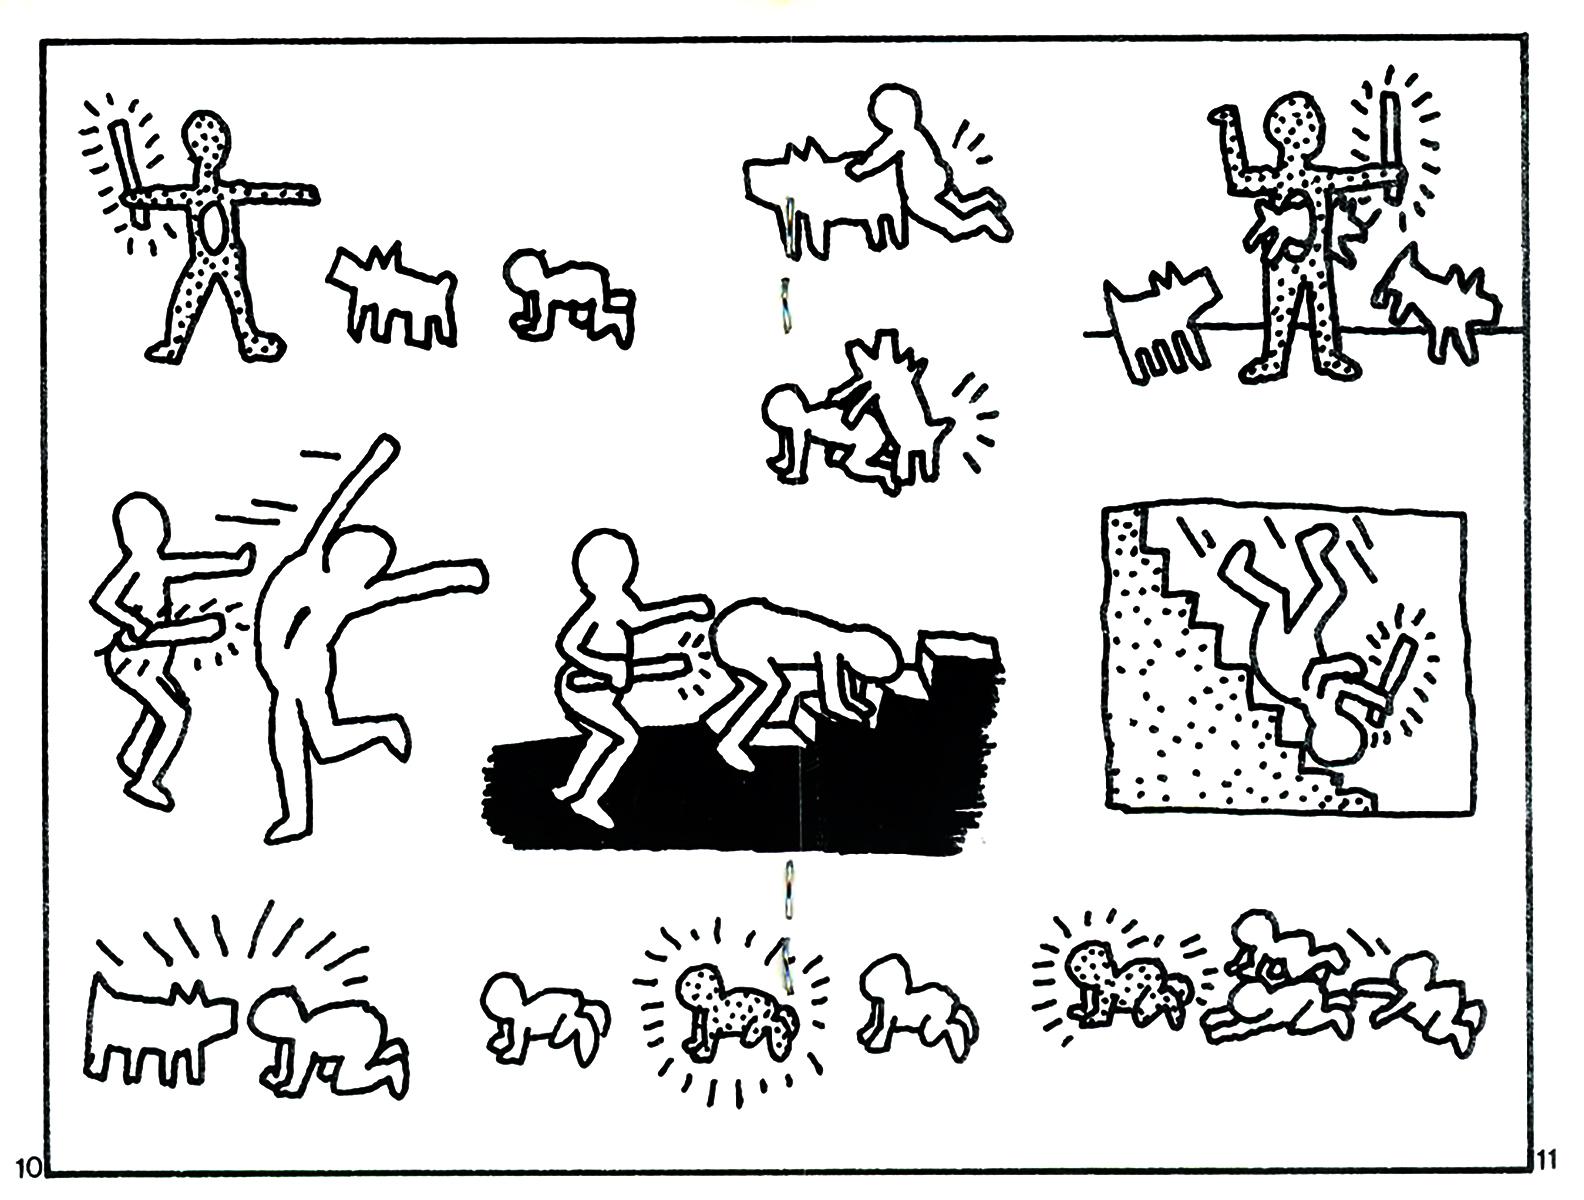 Keith Haring Illumination publique 1981 :
Un petit magazine d'art rare et à collectionner (mesurant 4,25 x 2,75 pouces), avec une page centrale illustrée par Keith Haring, crédité de manière ludique sous le nom de "Kip Herring". 

Les illustrations